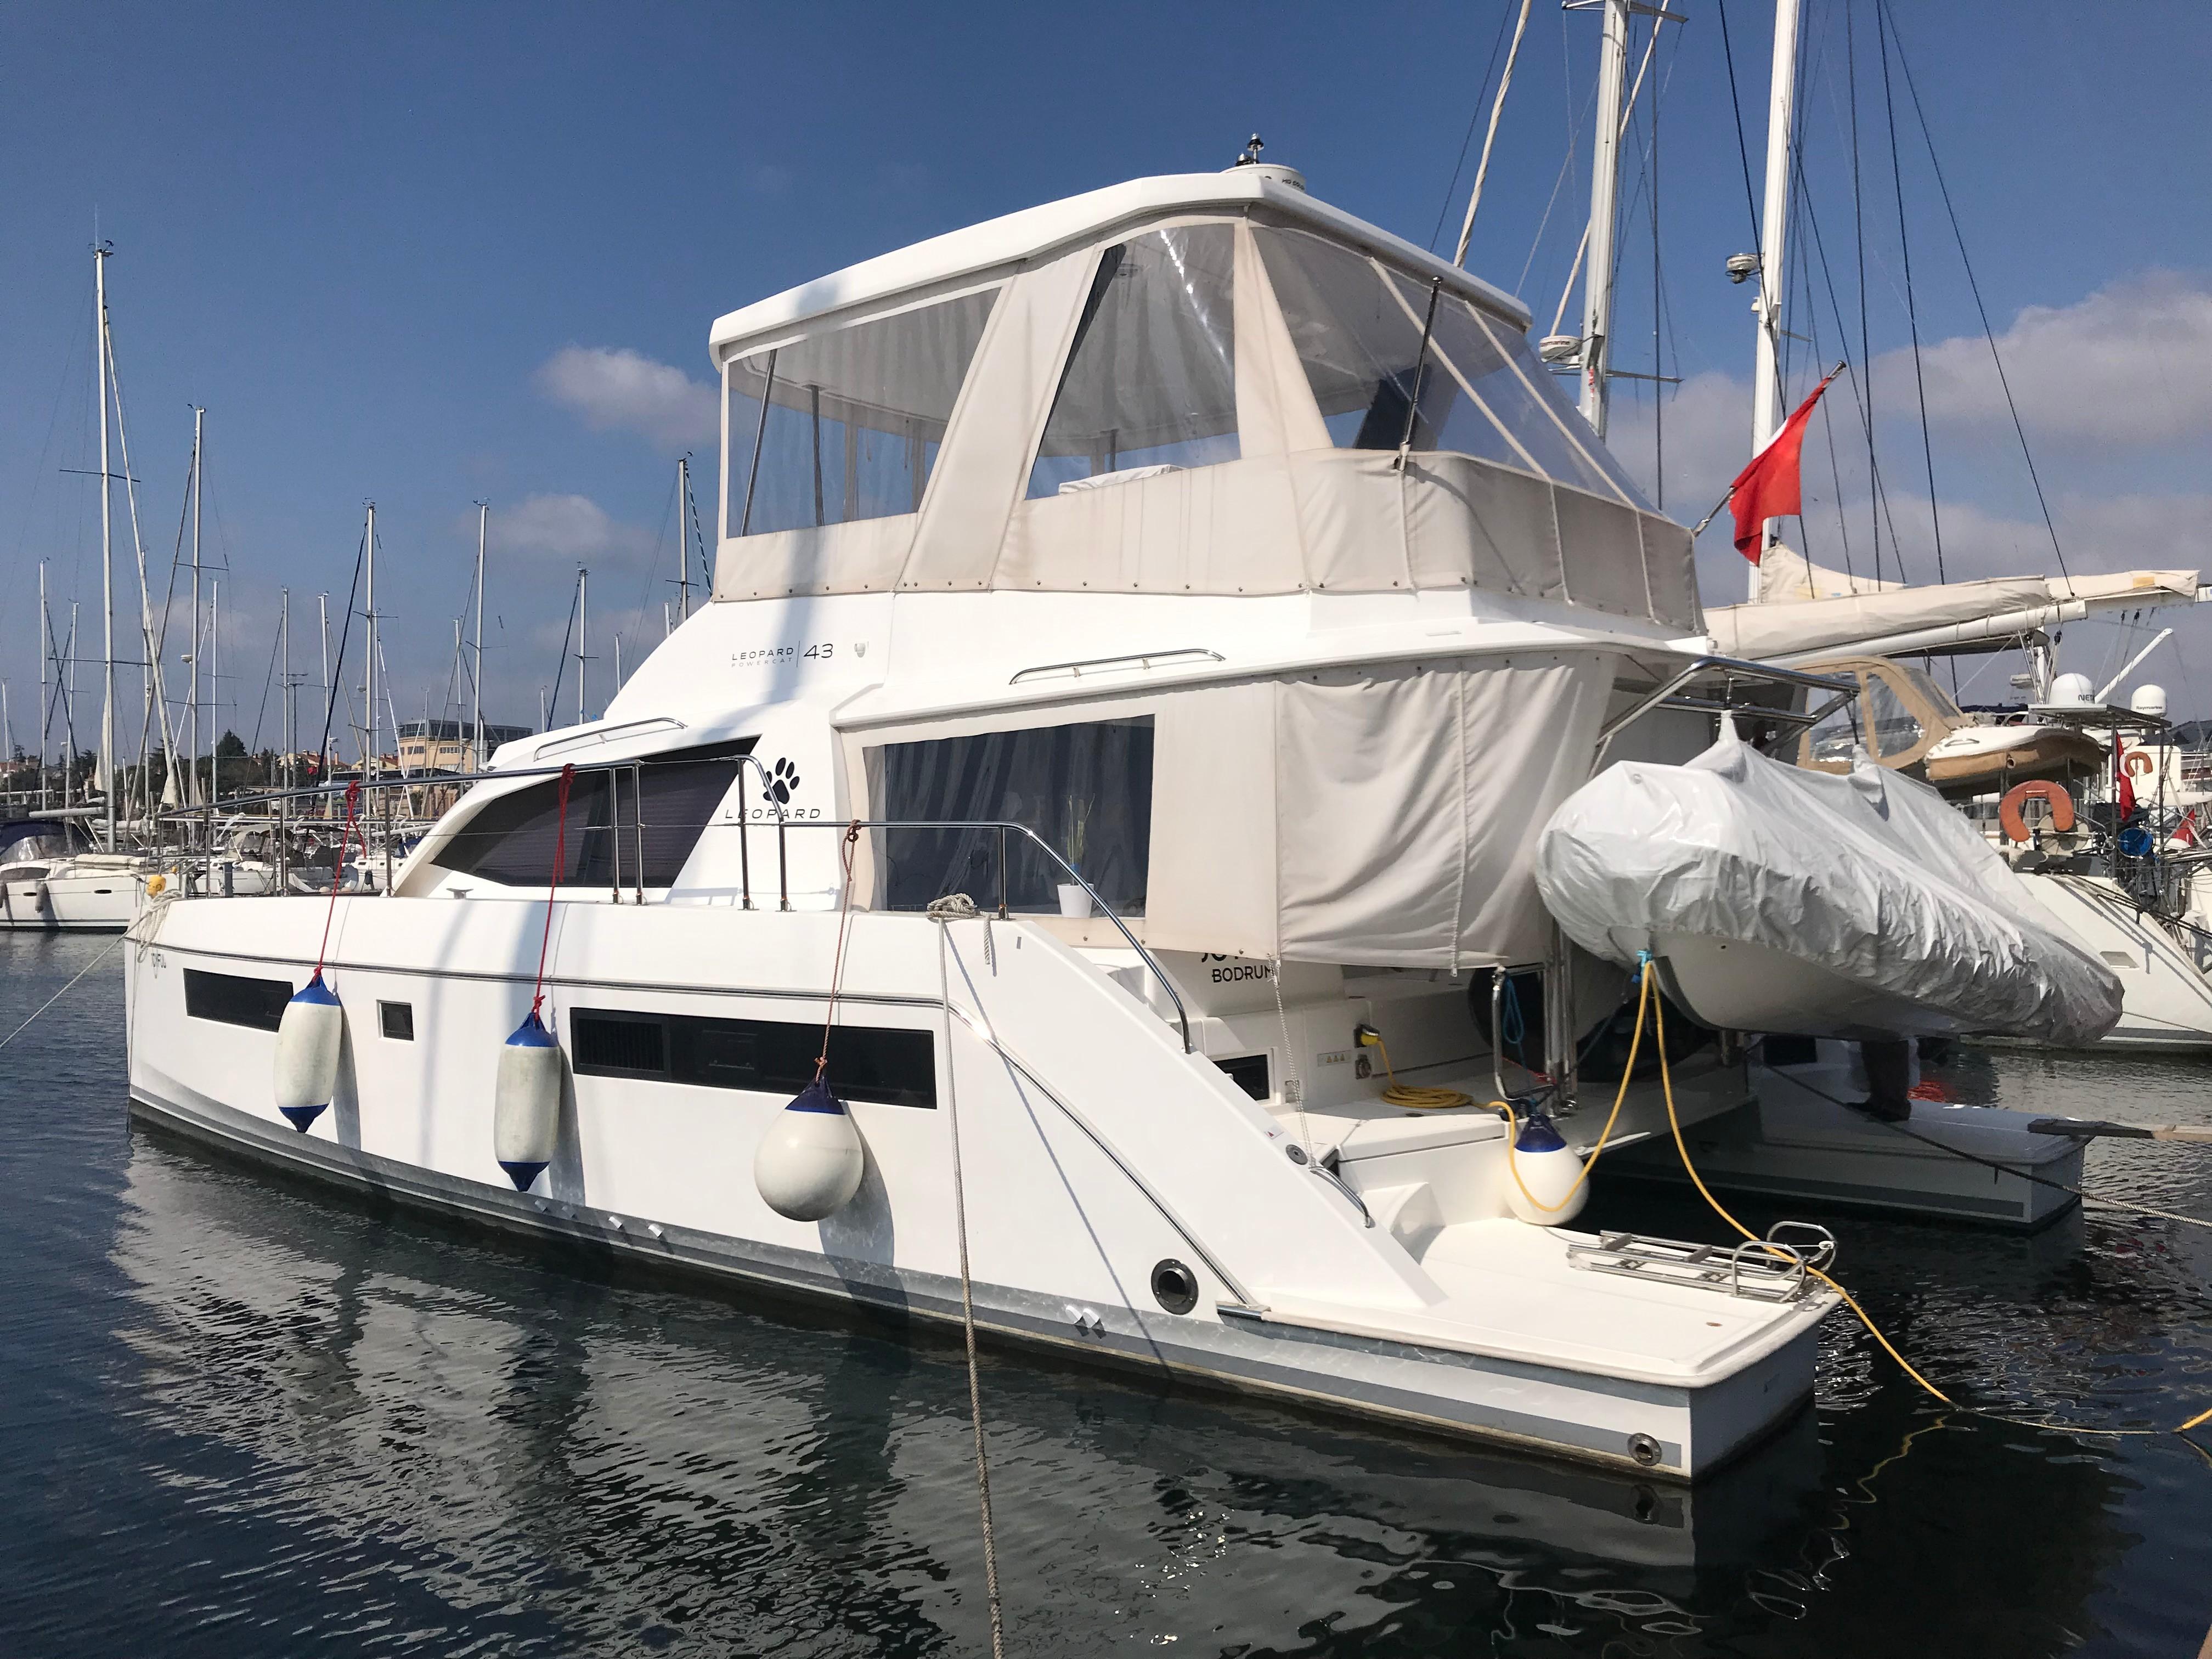 43 foot power catamaran